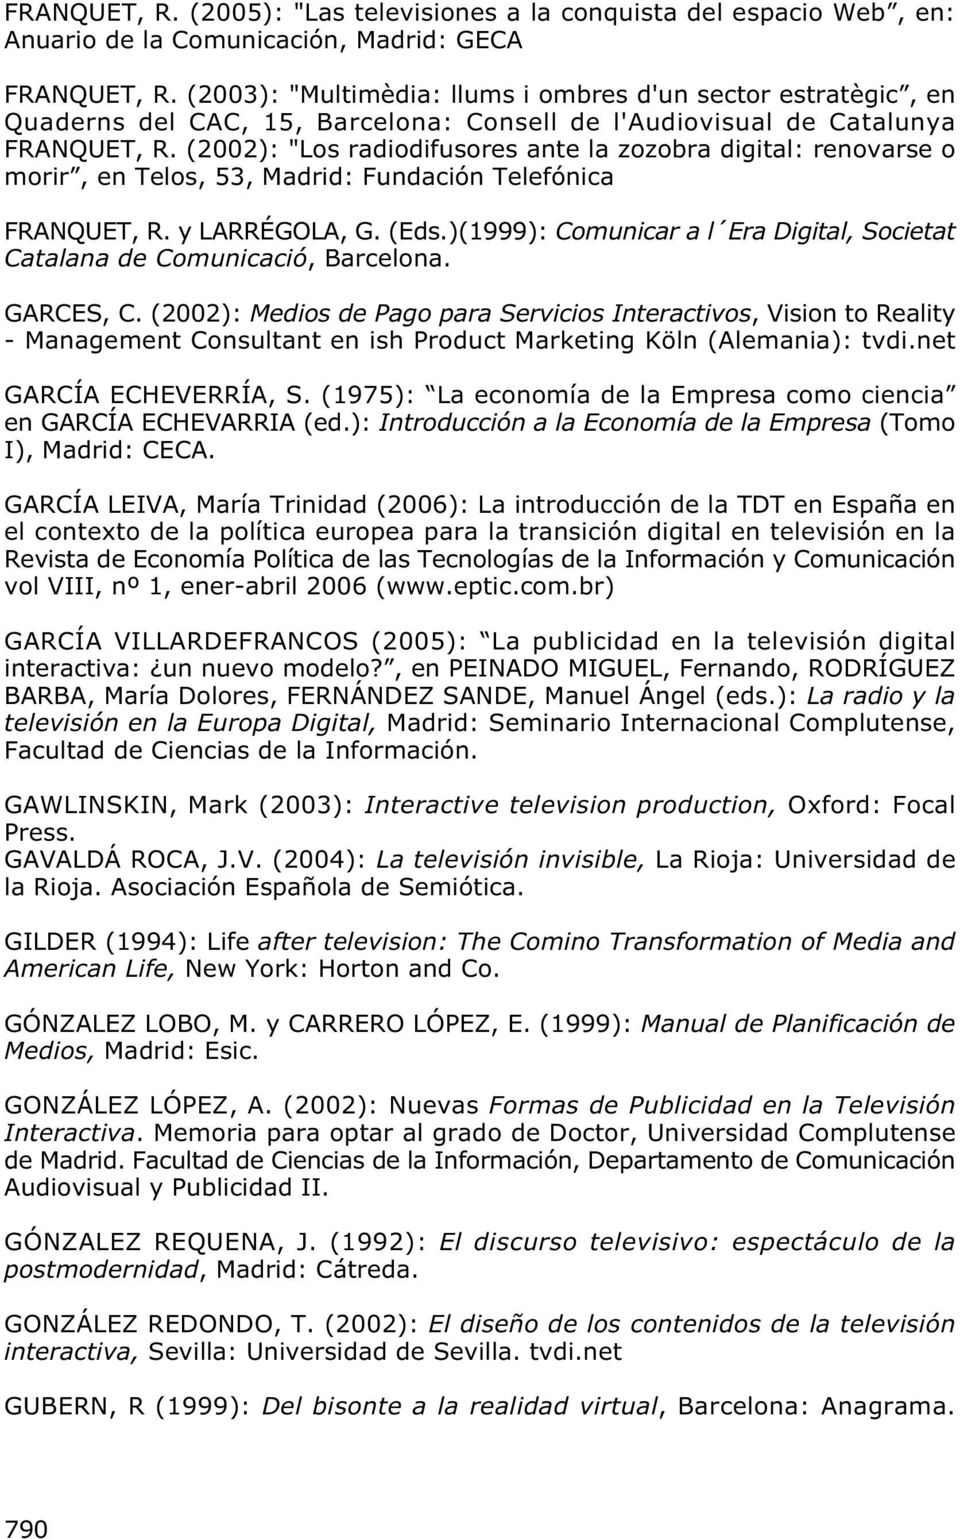 (2002): "Los radiodifusores ante la zozobra digital: renovarse o morir, en Telos, 53, Madrid: Fundación Telefónica FRANQUET, R. y LARRÉGOLA, G. (Eds.